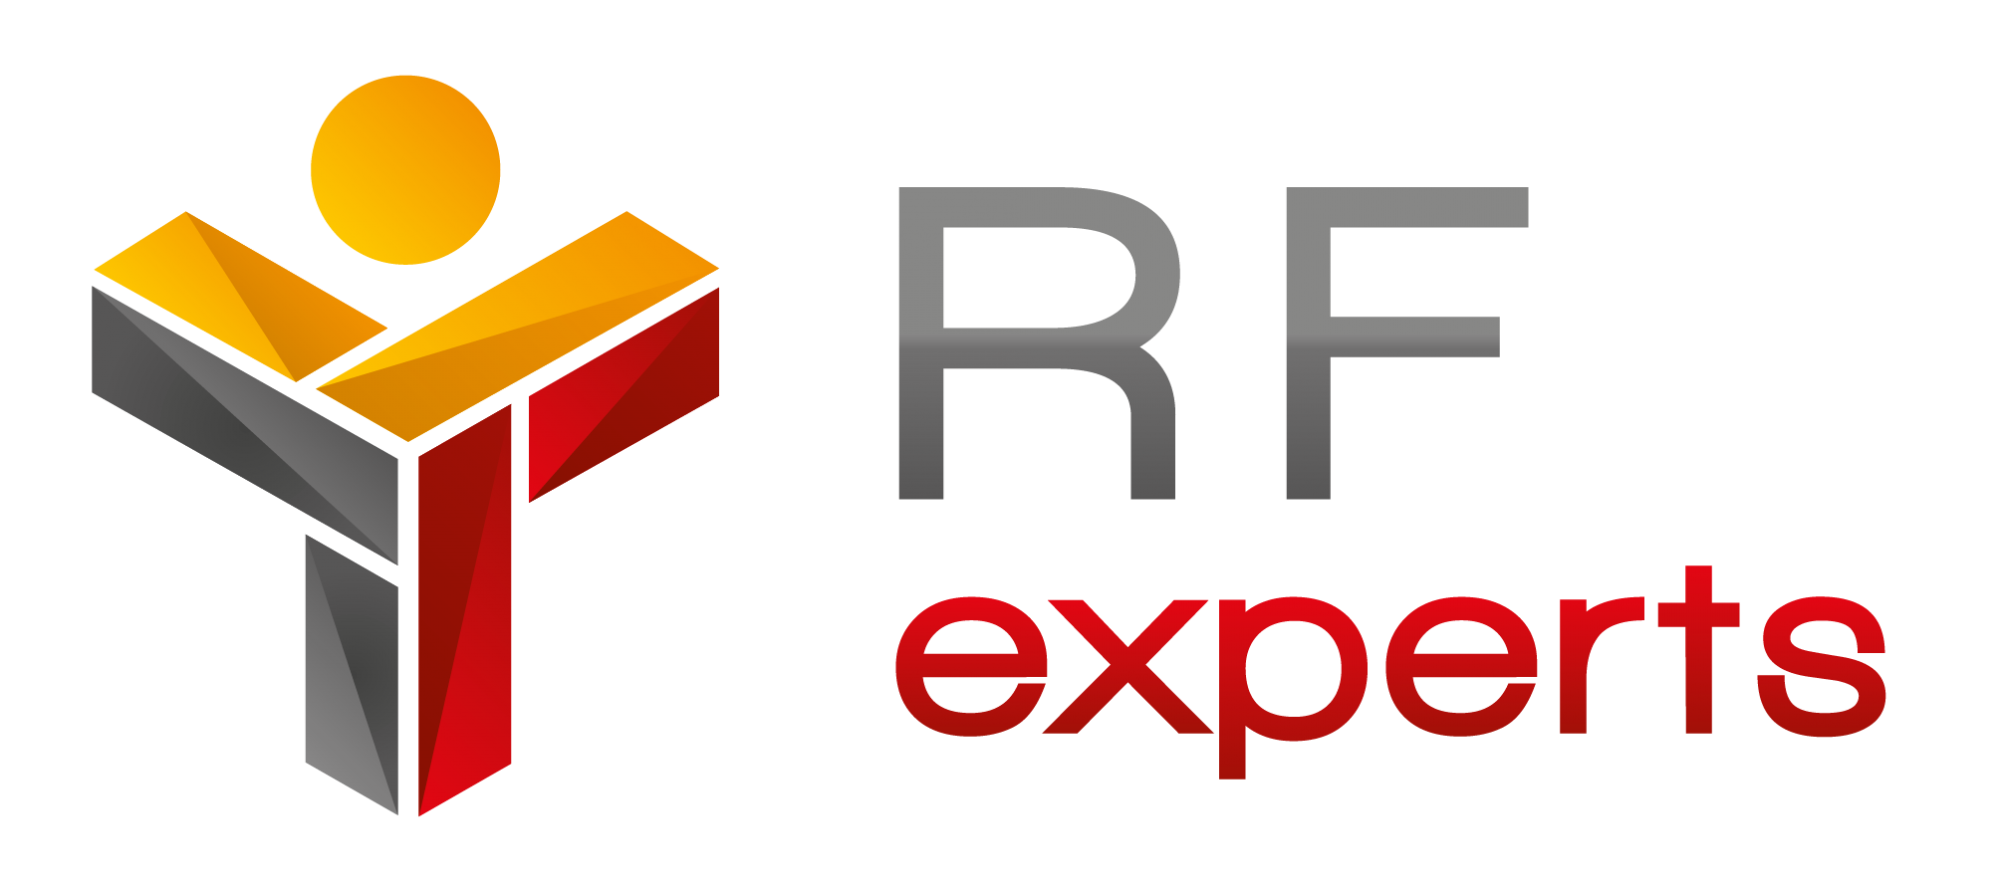 RF experts